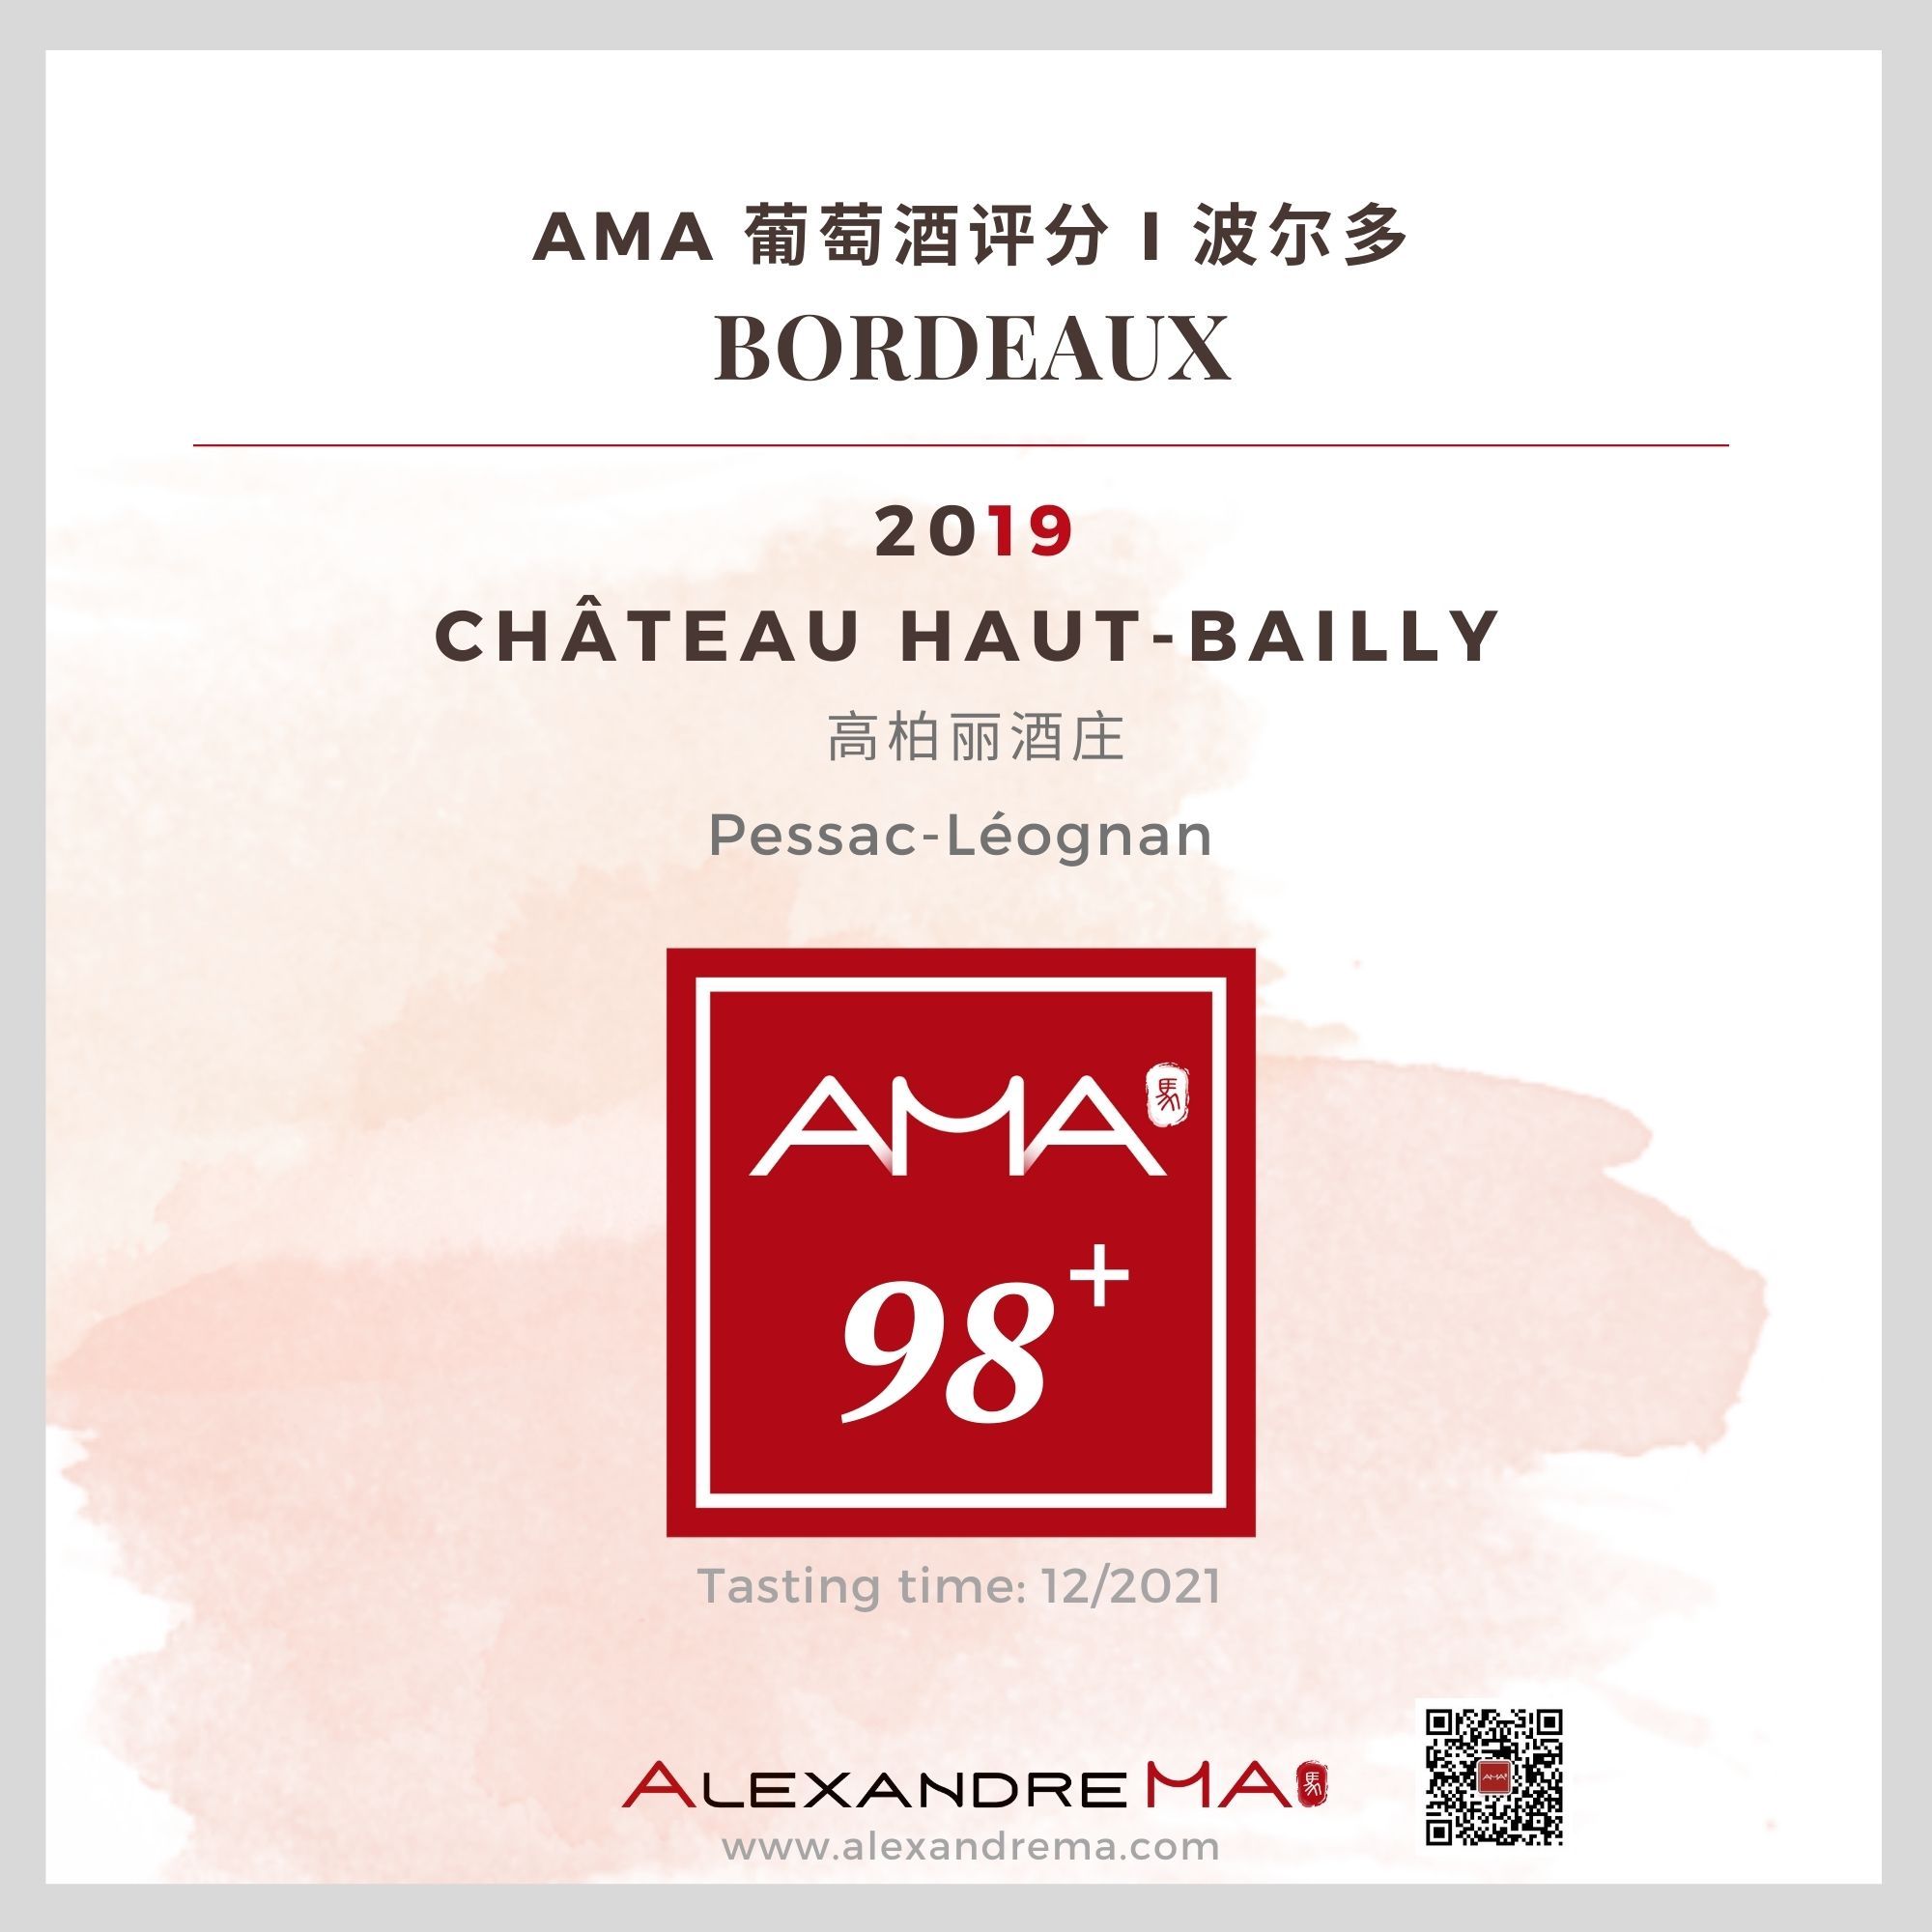 Château Haut-Bailly 2019 高柏丽酒庄 - Alexandre Ma